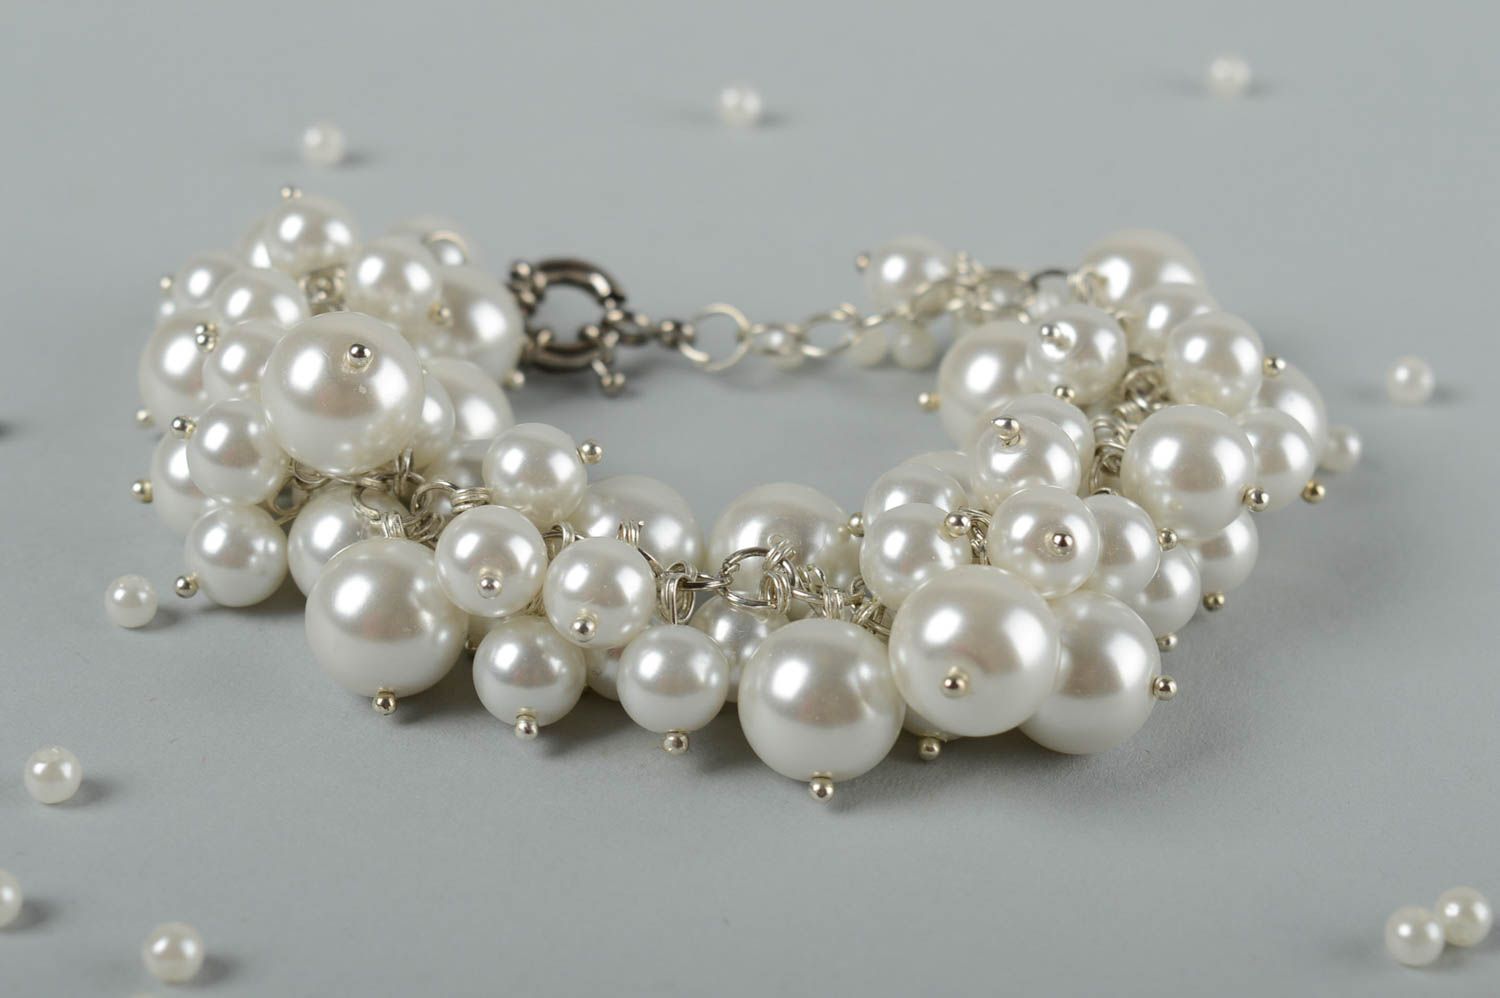 Handmade white beads chain bracelet for women photo 1